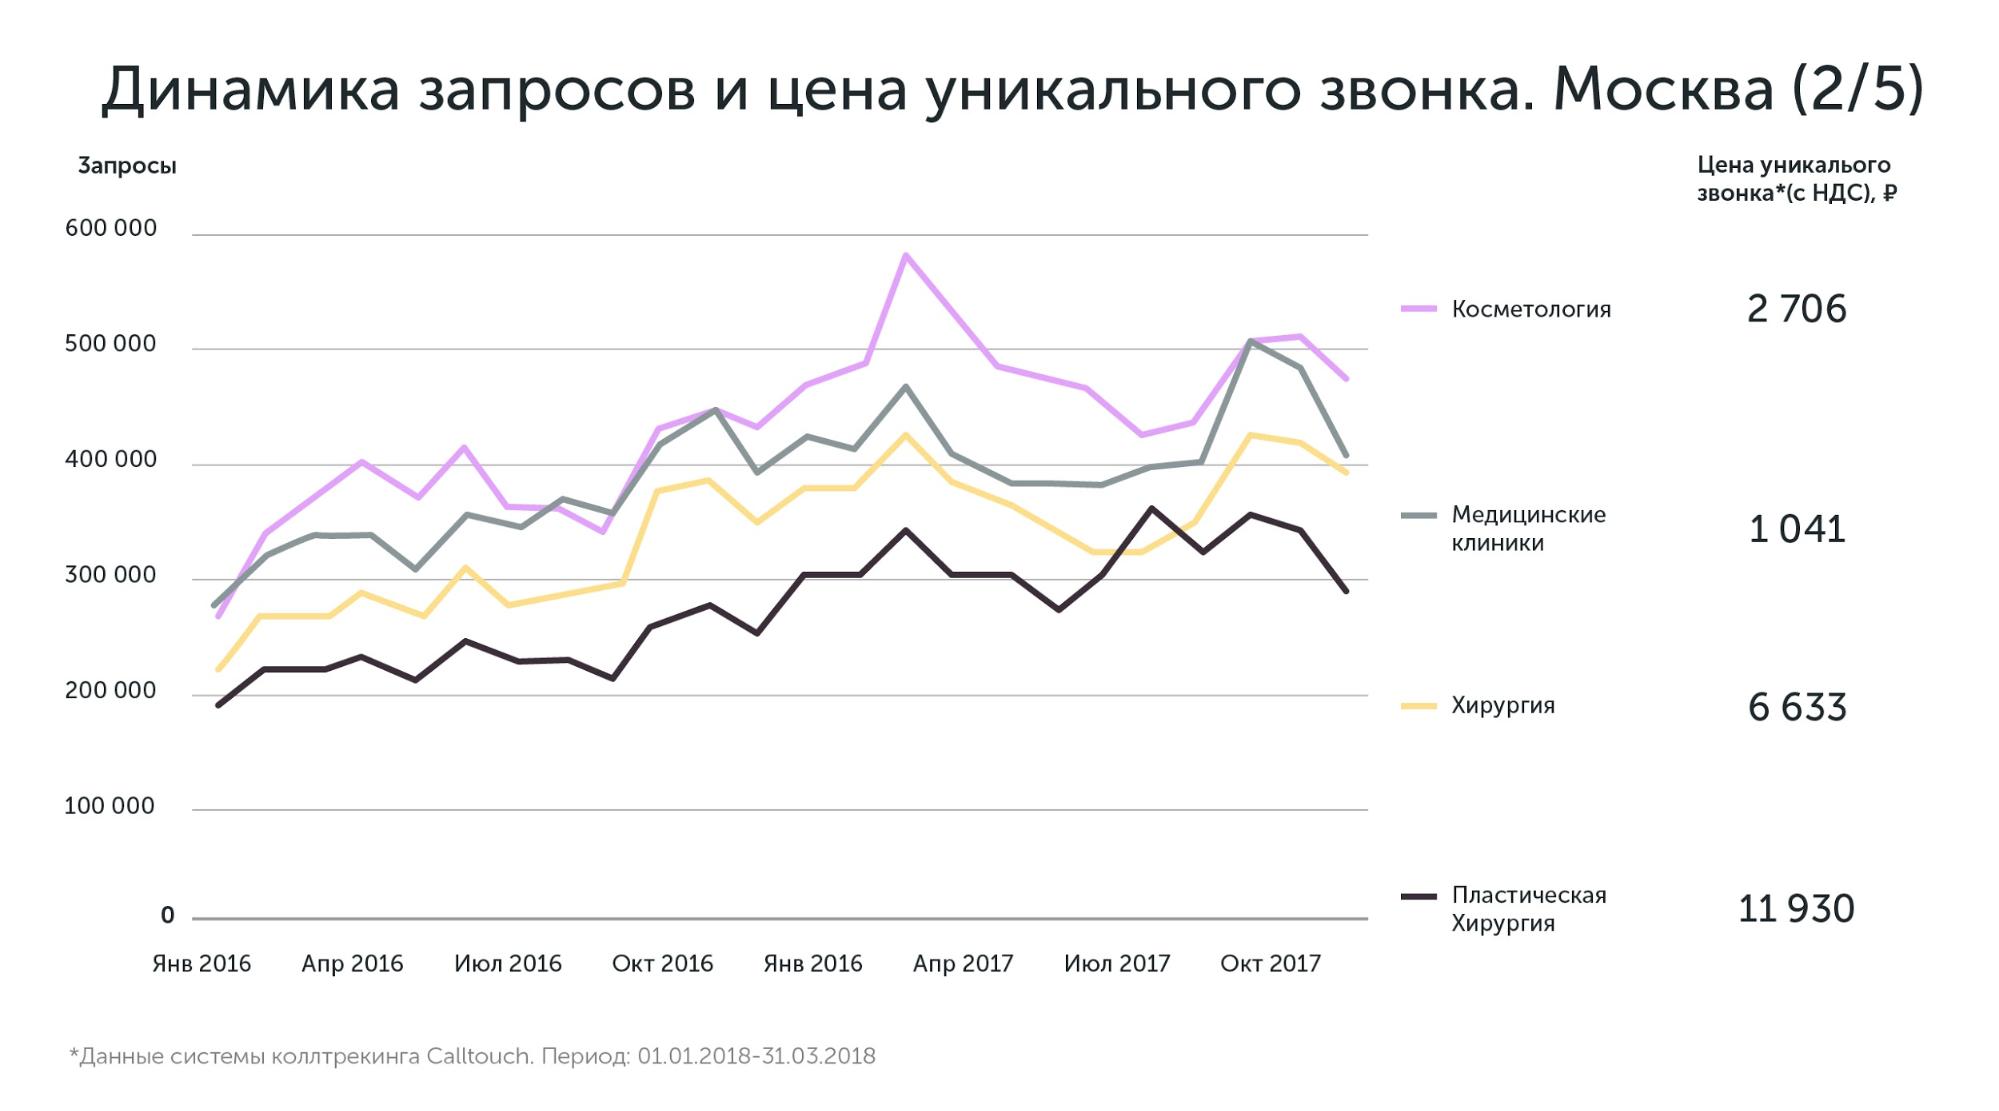 Данные по Москве и Московской области по стоимости привлечения лидов в медицине